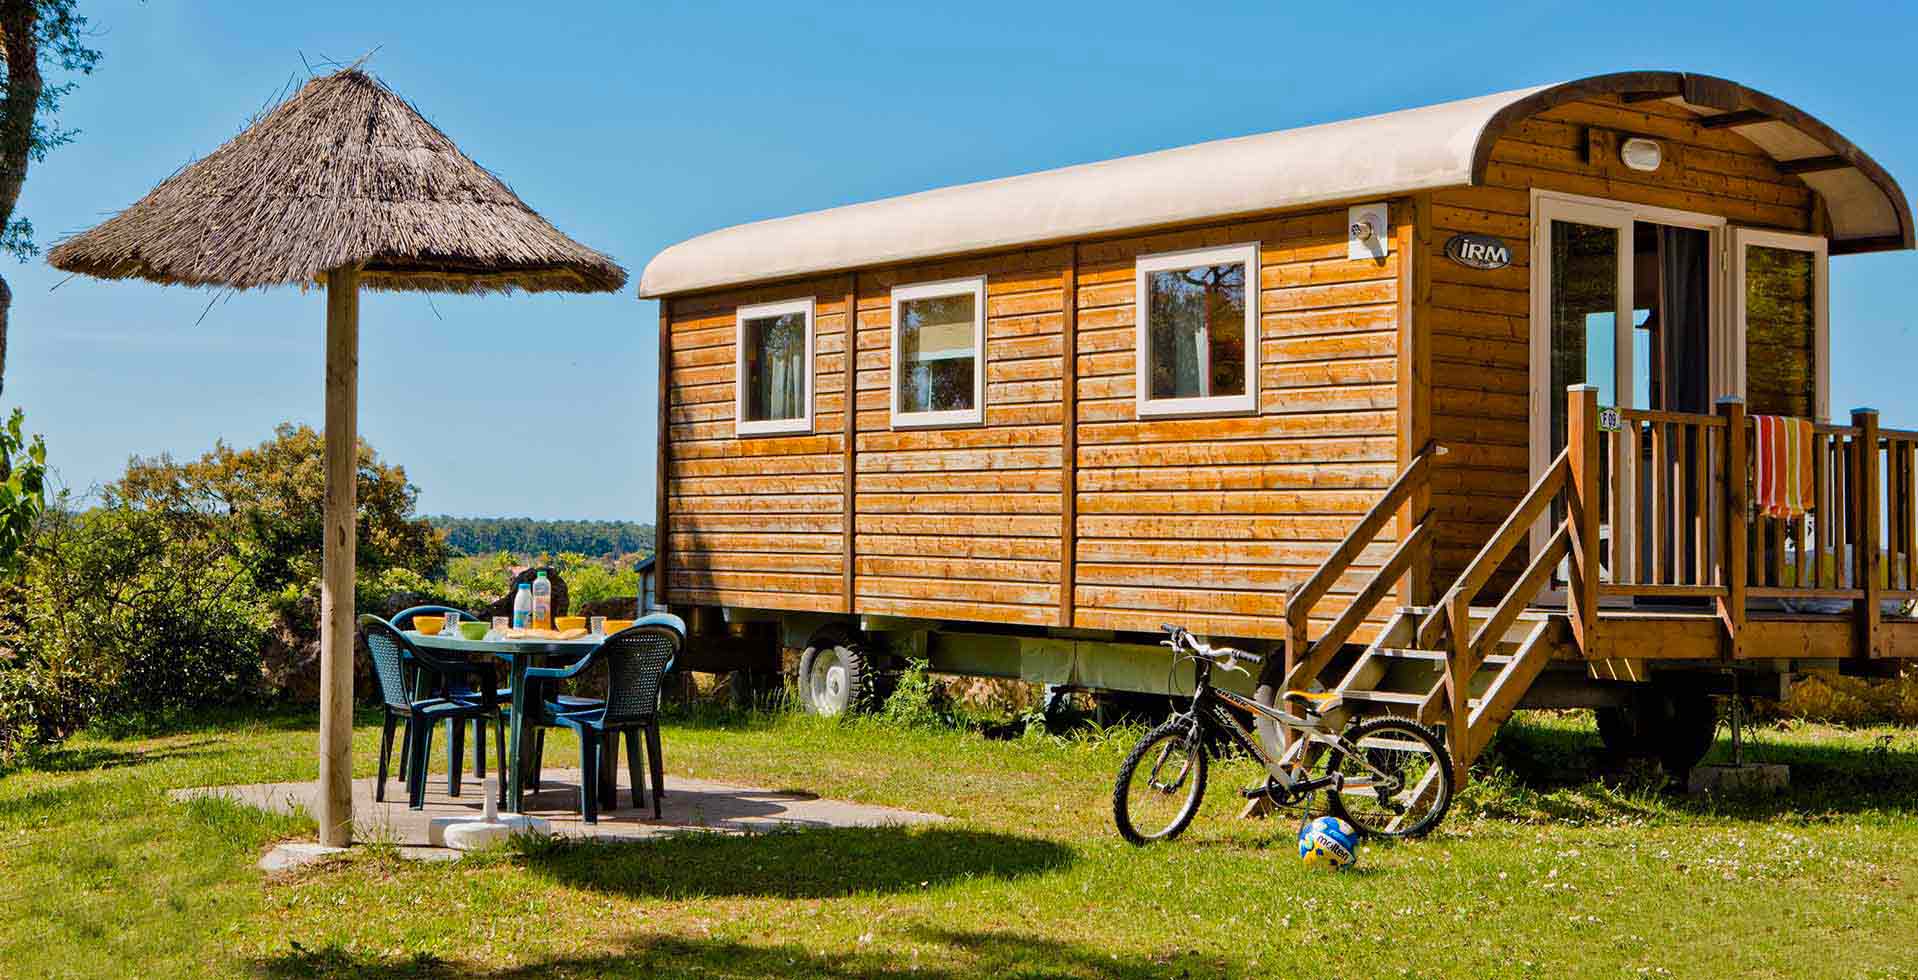 Quels sont les meilleurs campings où louer un mobil-home dans les Landes ?